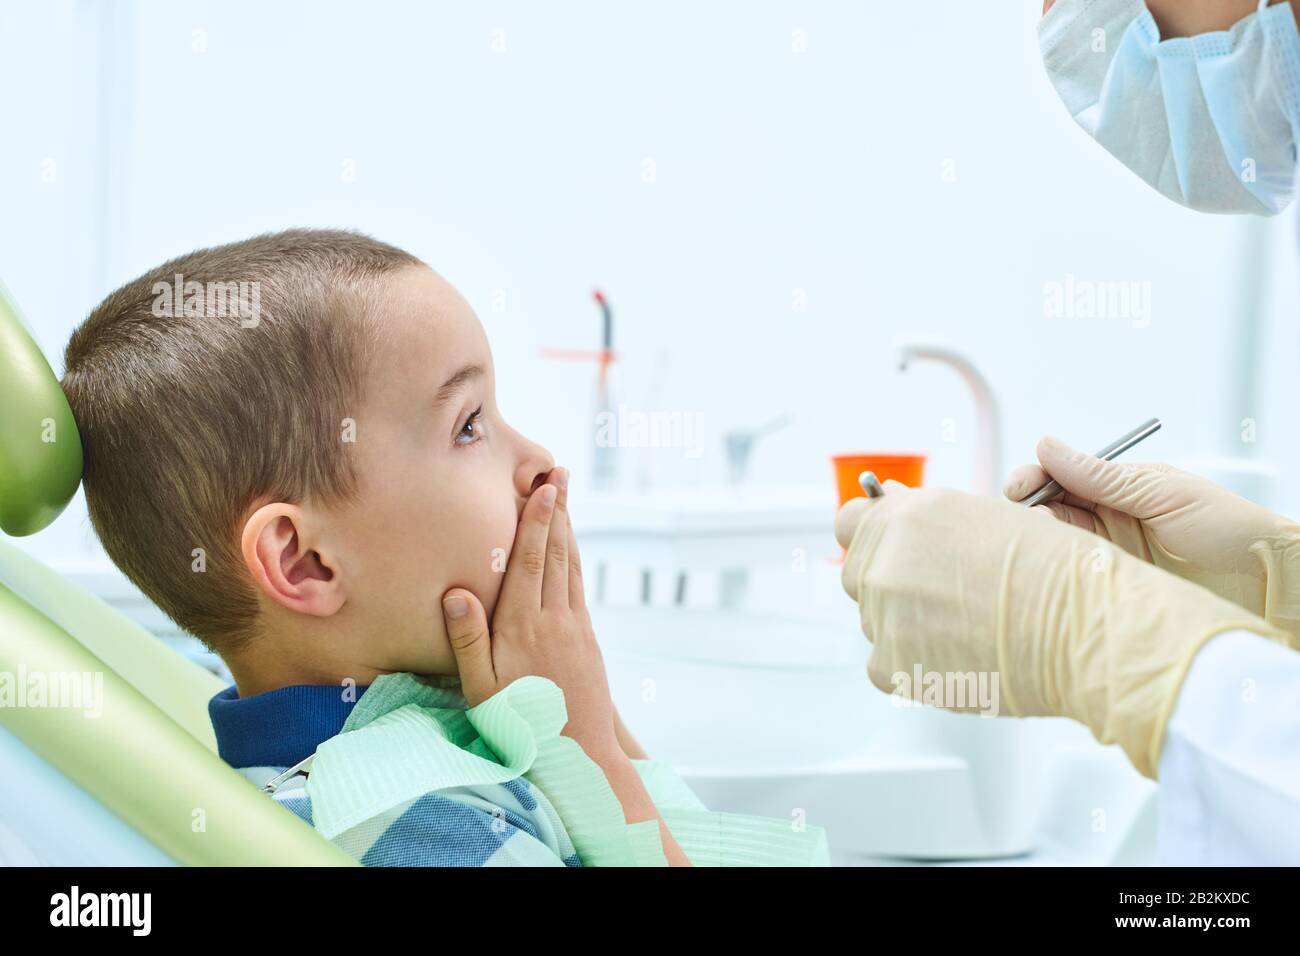 Ritratto di un bambino spaventato in una sedia dentale. Il ragazzo gli copre la bocca con le mani, impaurito di essere esaminato da un dentista. Odontoiatria dei bambini. Foto Stock